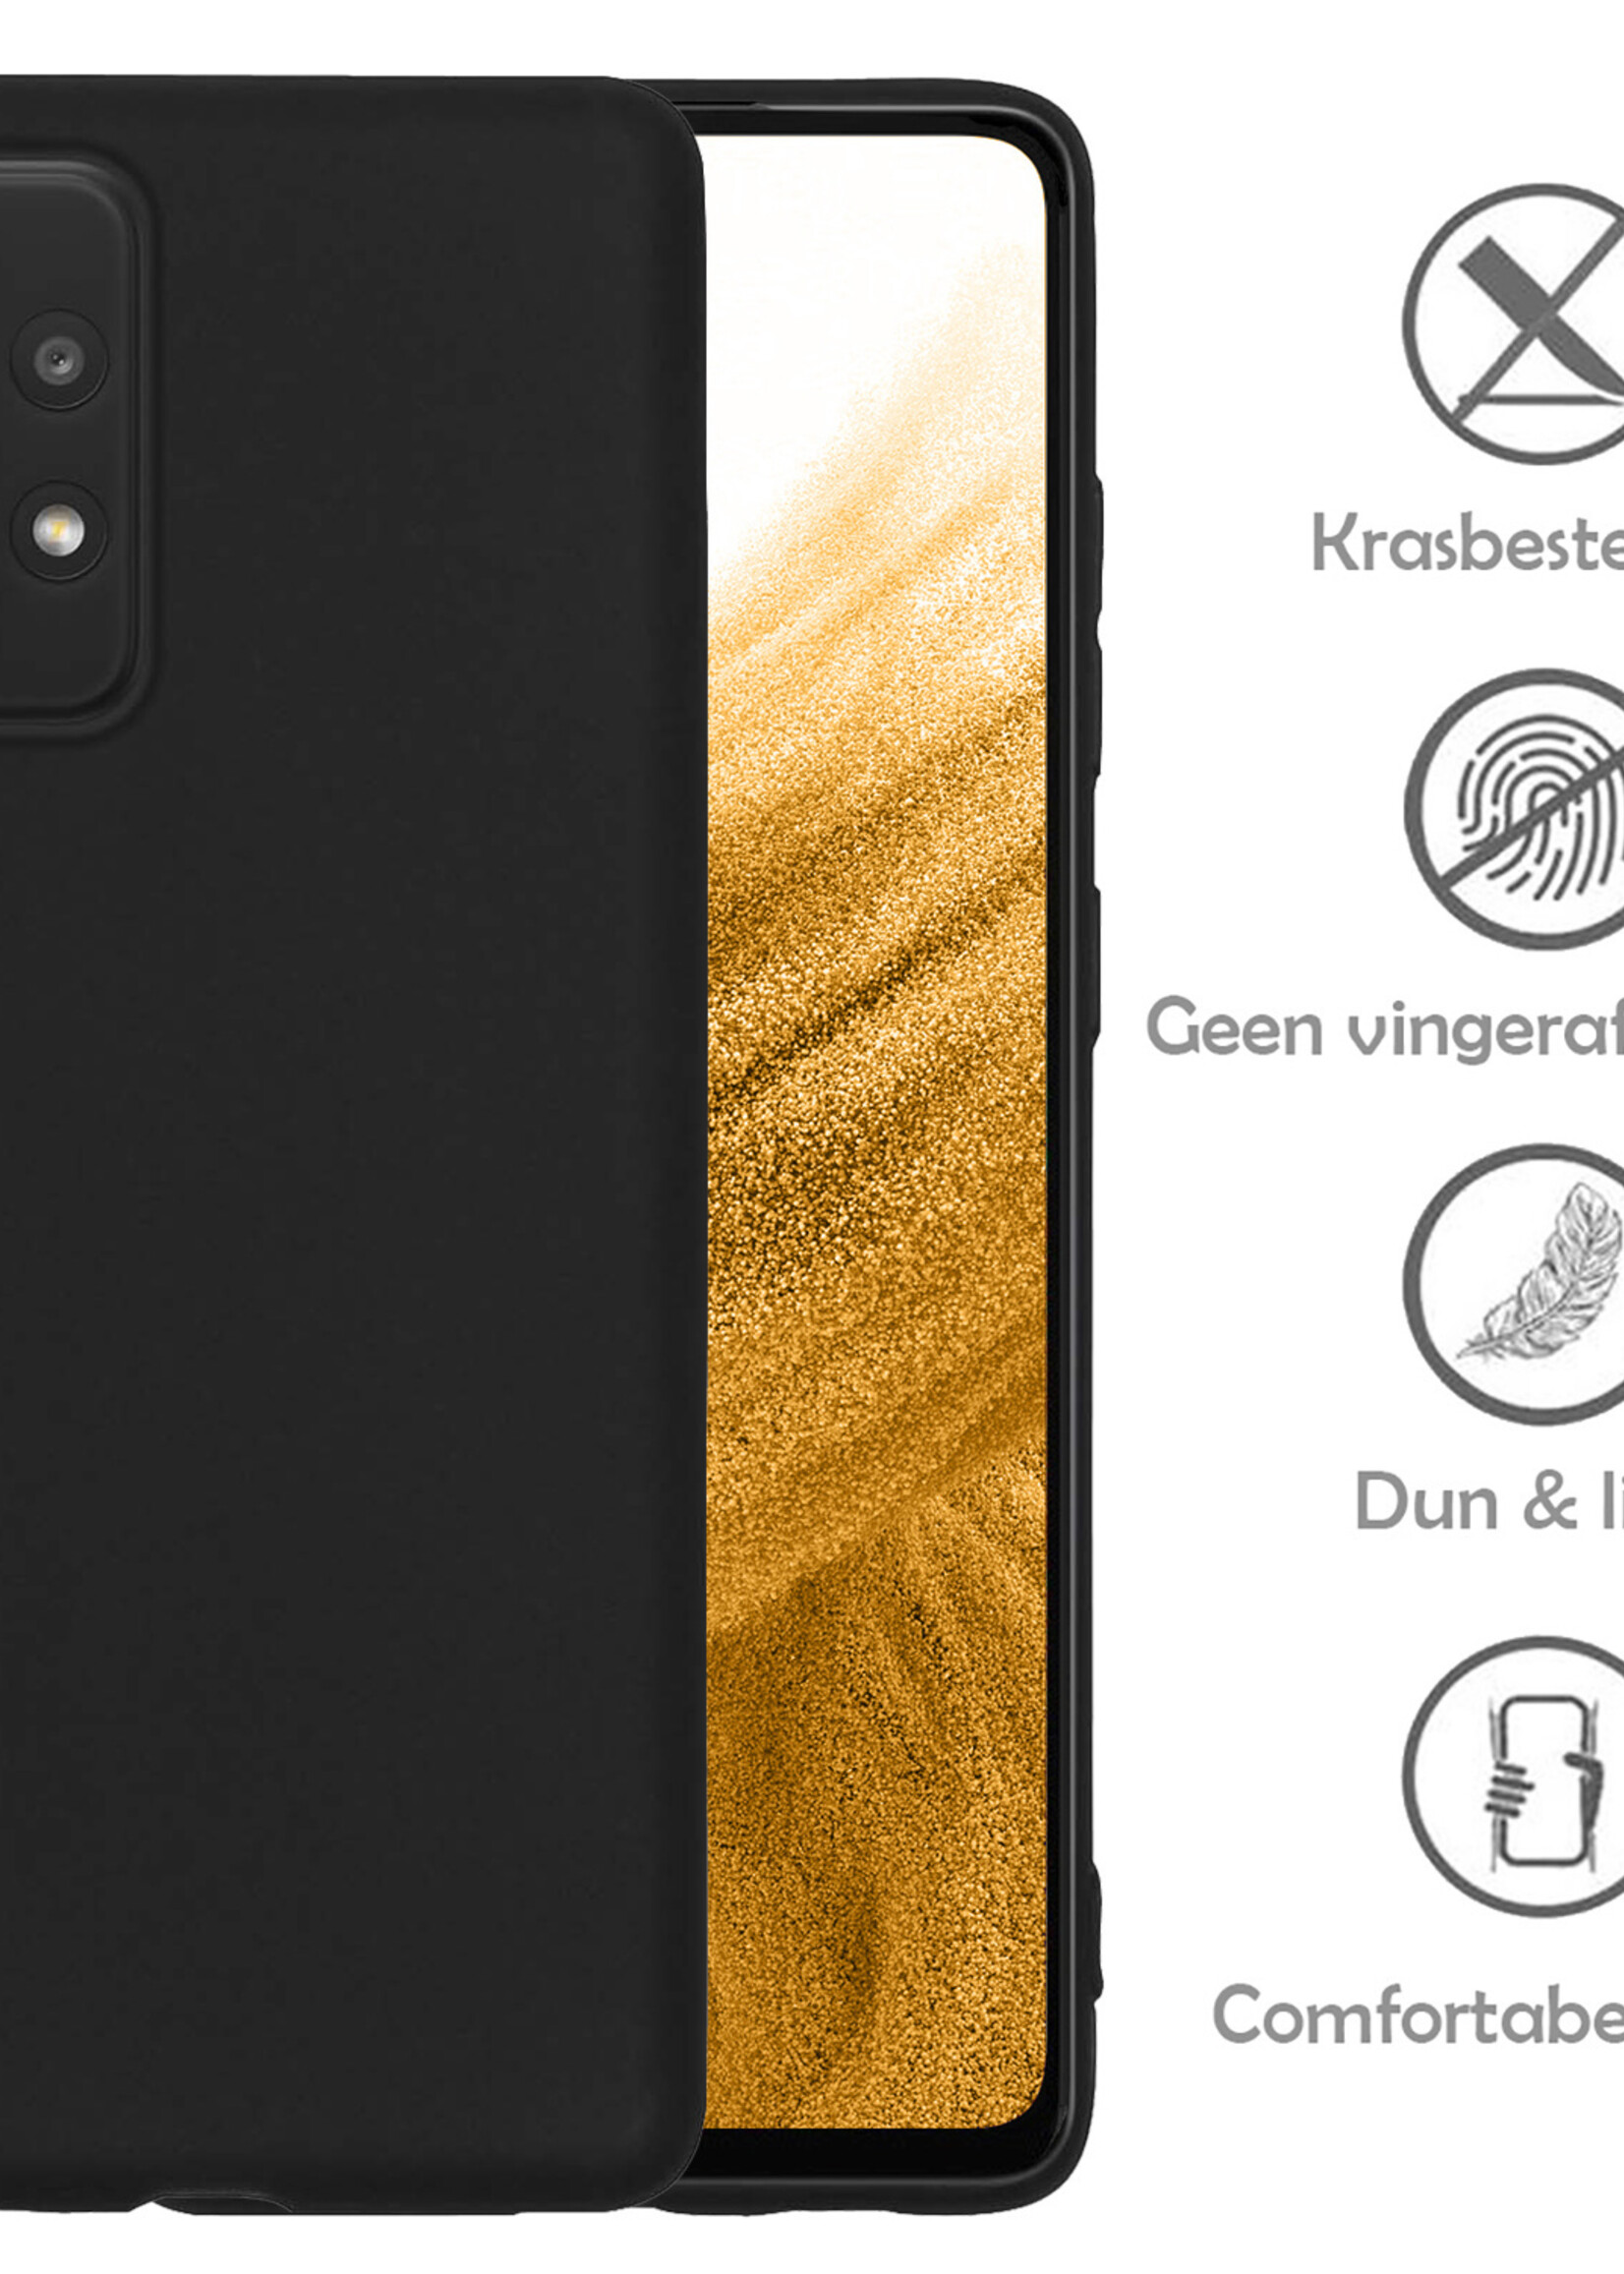 Hoesje Geschikt voor Samsung A53 Hoesje Siliconen Case - Hoes Geschikt voor Samsung Galaxy A53 Hoes Siliconen - Zwart - 2 Stuks